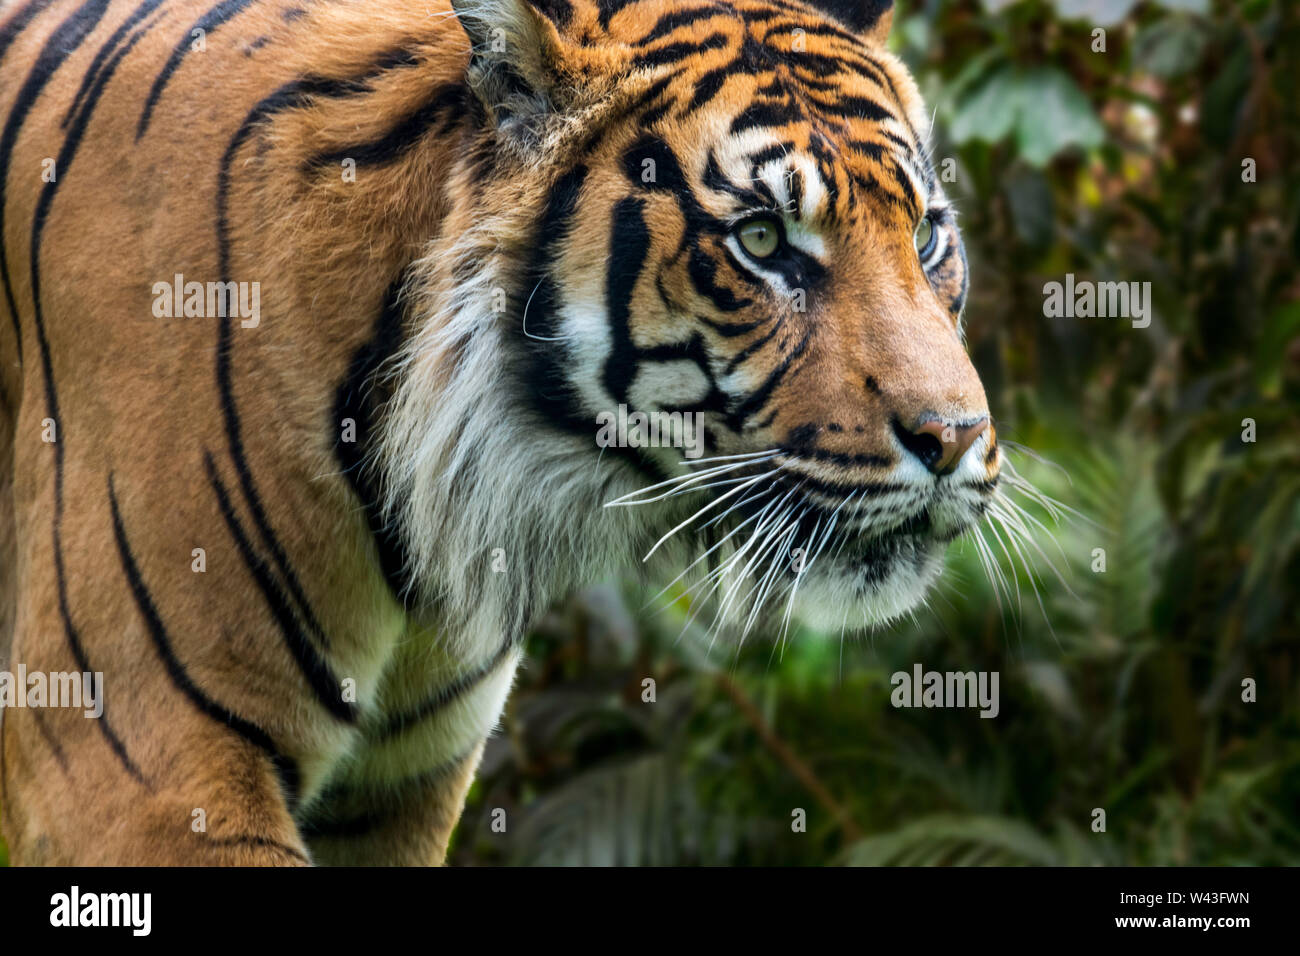 Tigre de Sumatra (Panthera tigris sondaica) en el bosque tropical, nativo de la isla indonesia de Sumatra, Indonesia Foto de stock